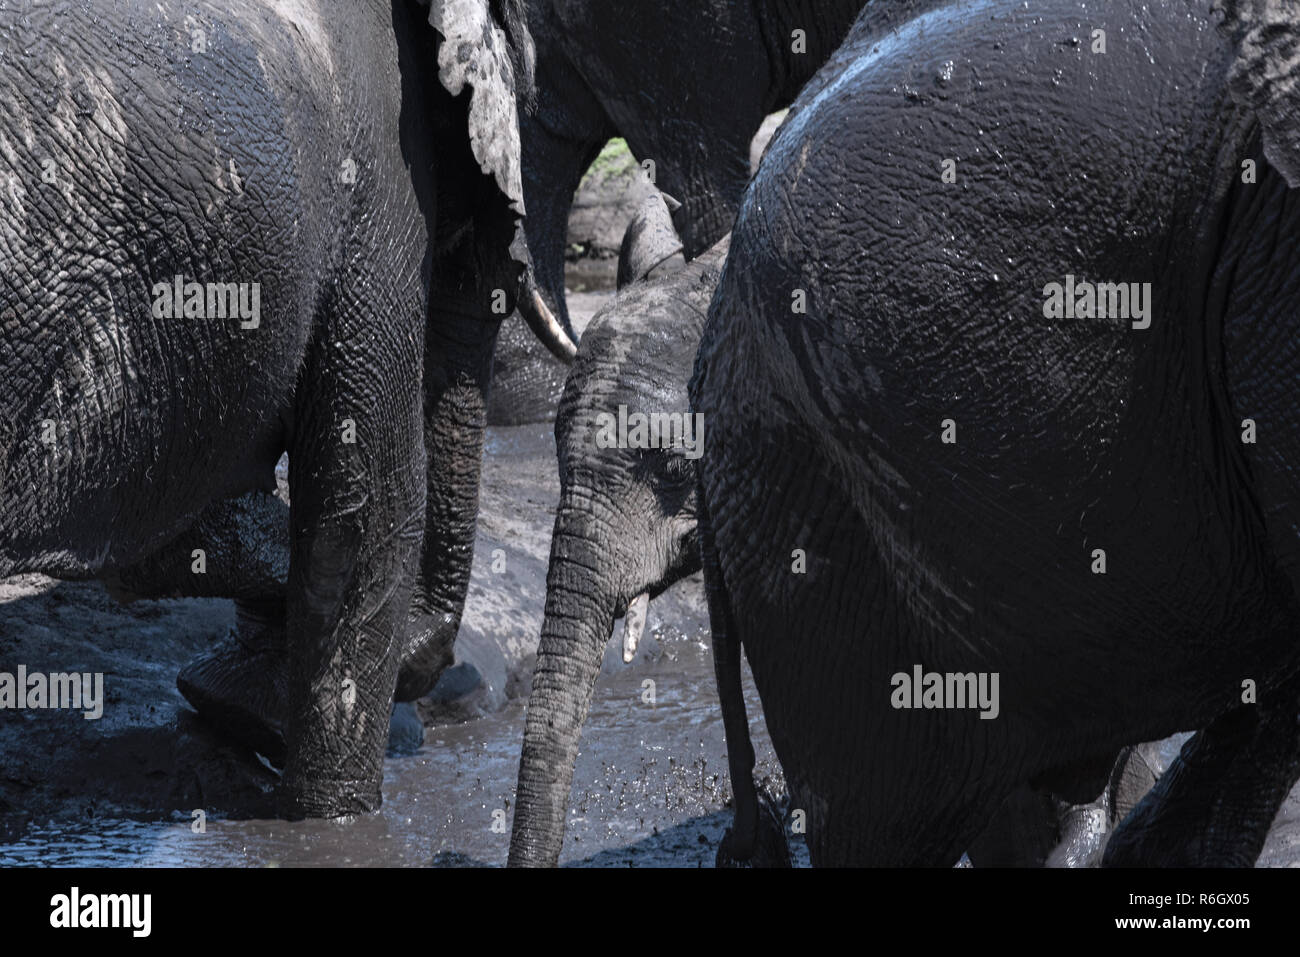 Groupe d'éléphants au bain de boue dans la rivière Chobe, au Botswana. Banque D'Images